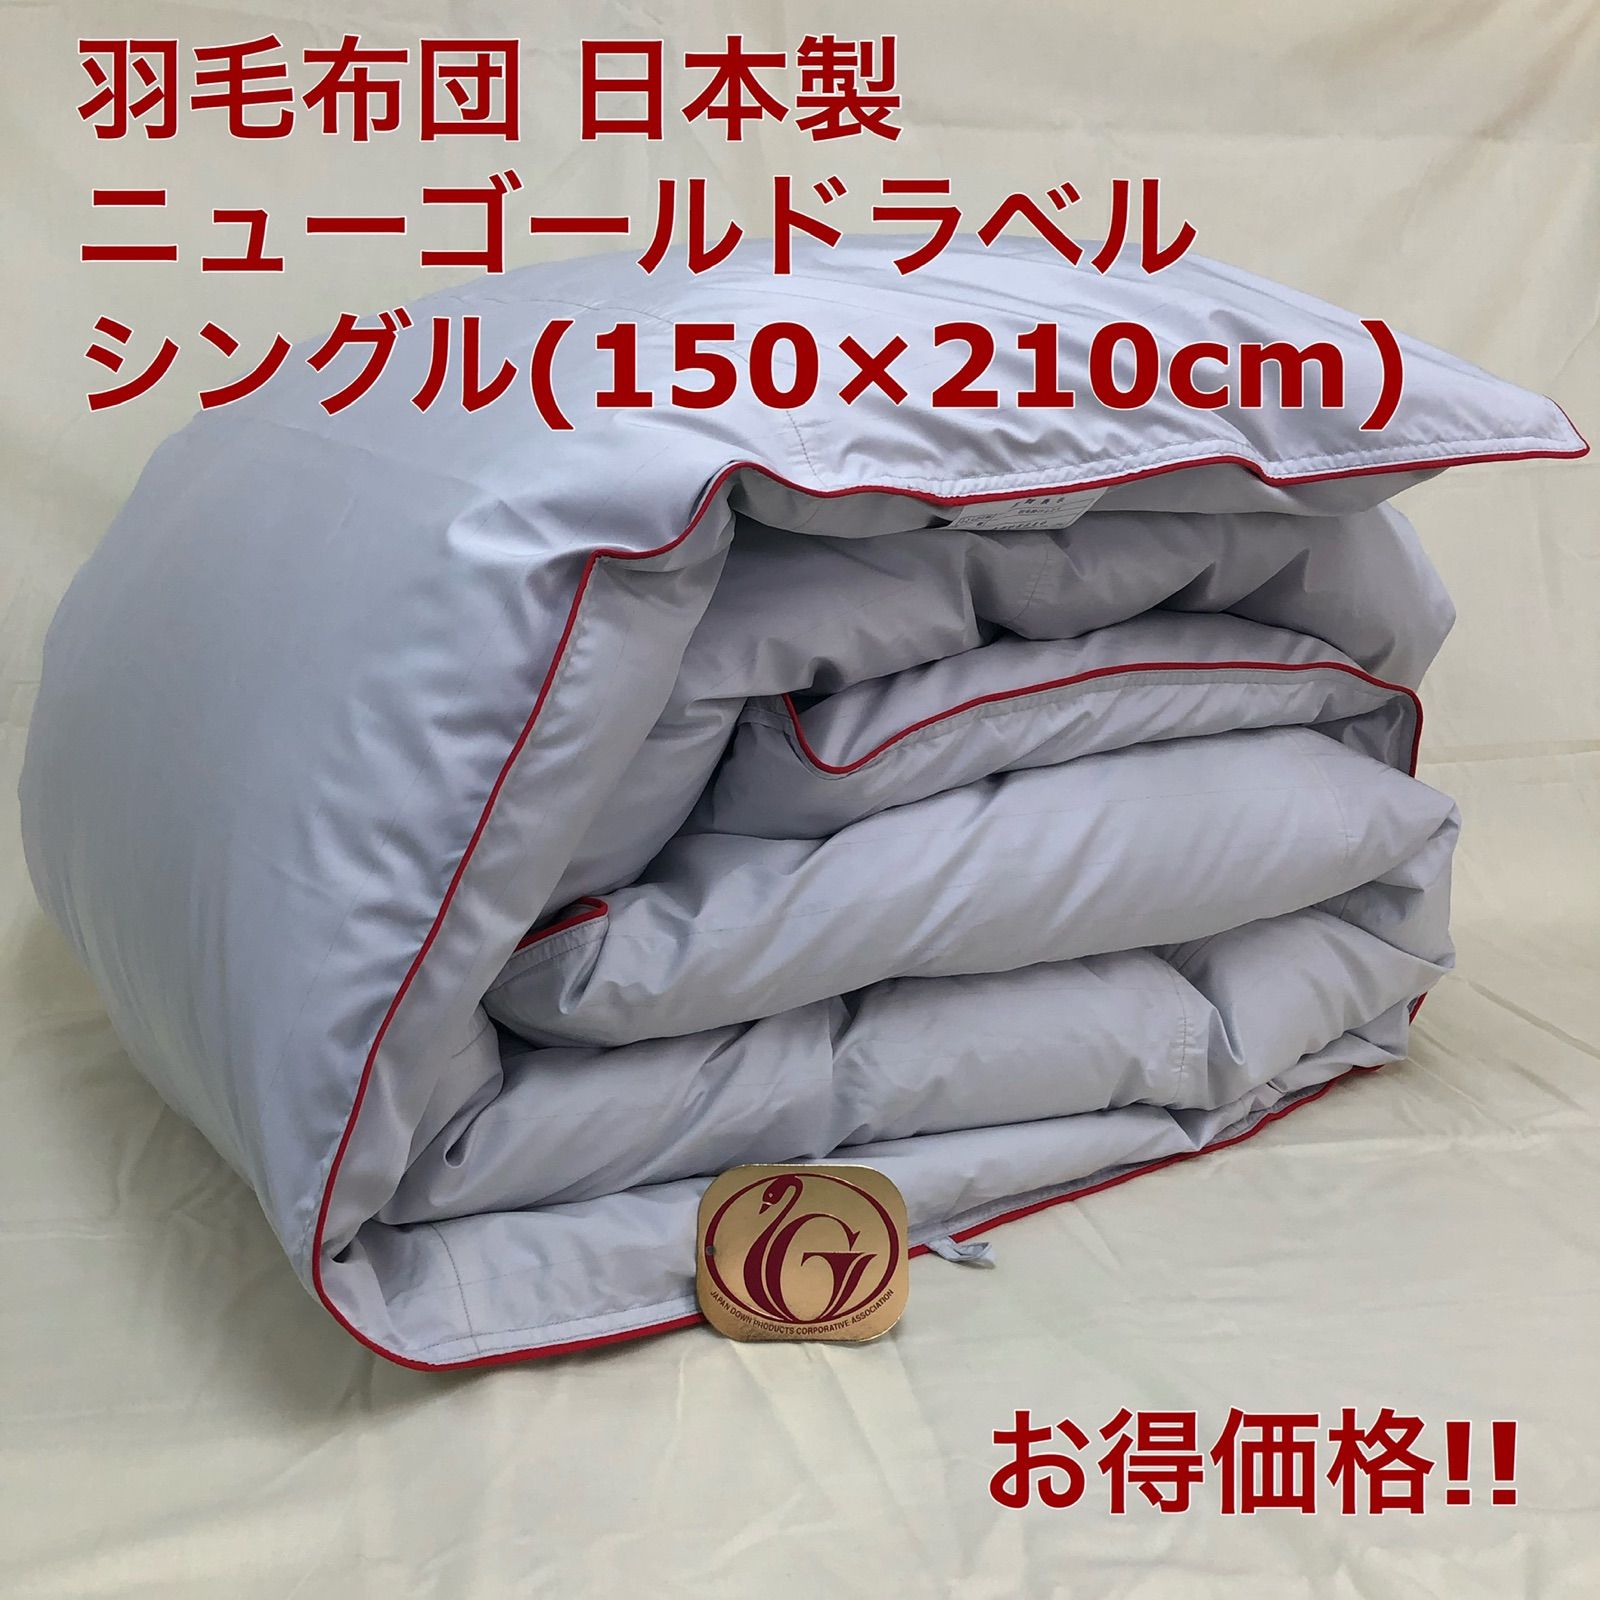 羽毛布団 シングル ニューゴールド きなり 日本製 150×210cm 特別価